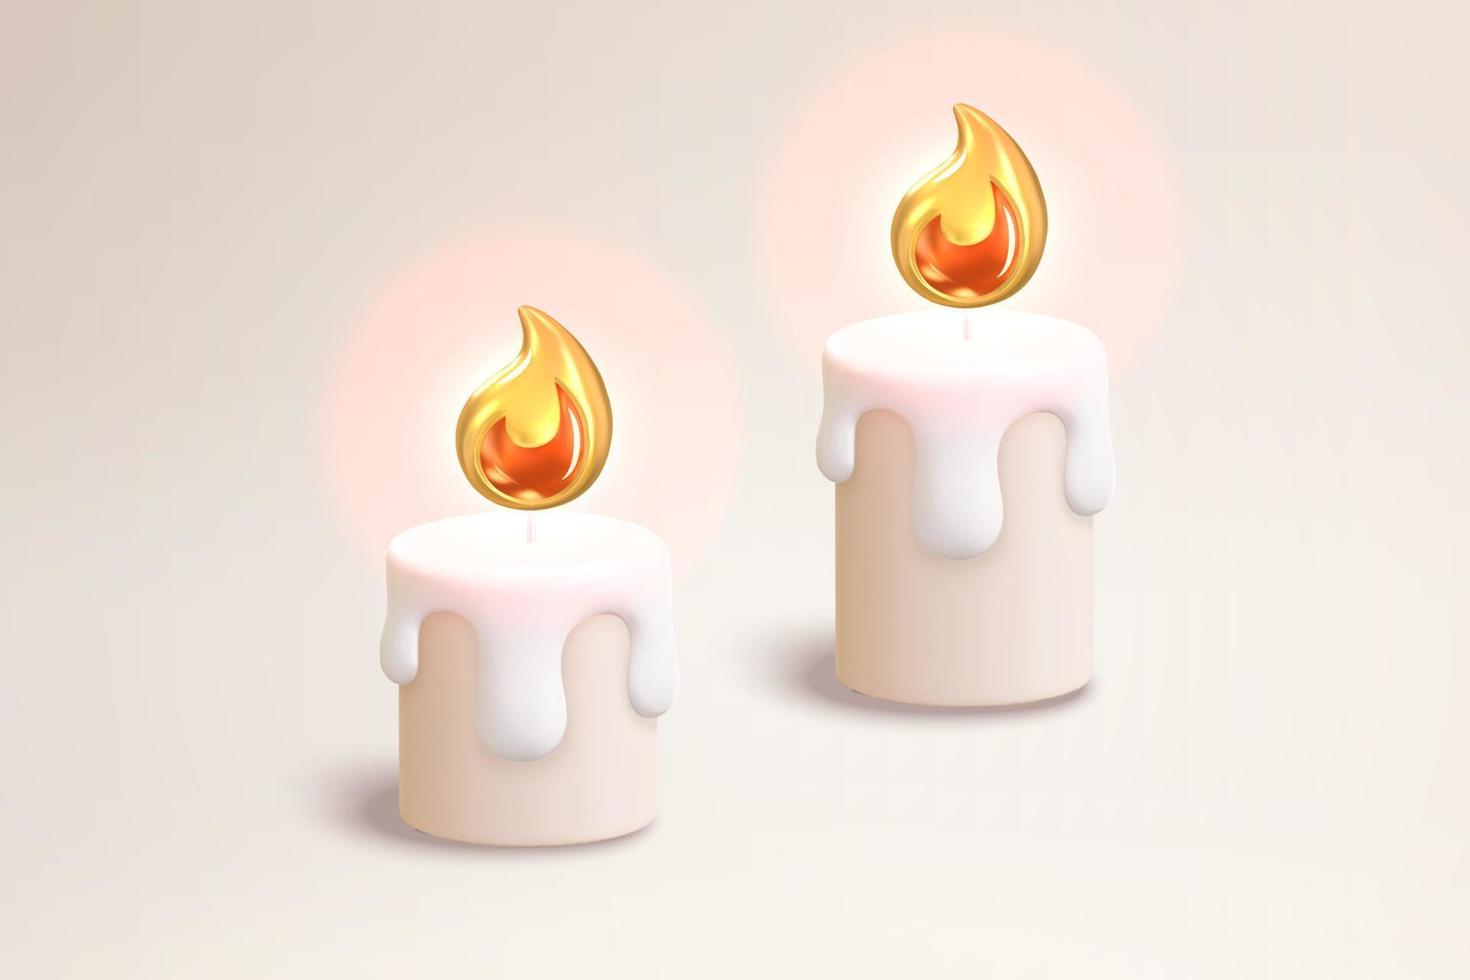 bougies fondues 3d et flammes. illustration de deux bougies allumées adaptées aux occasions de noël, cérémonielles et rituelles vecteur